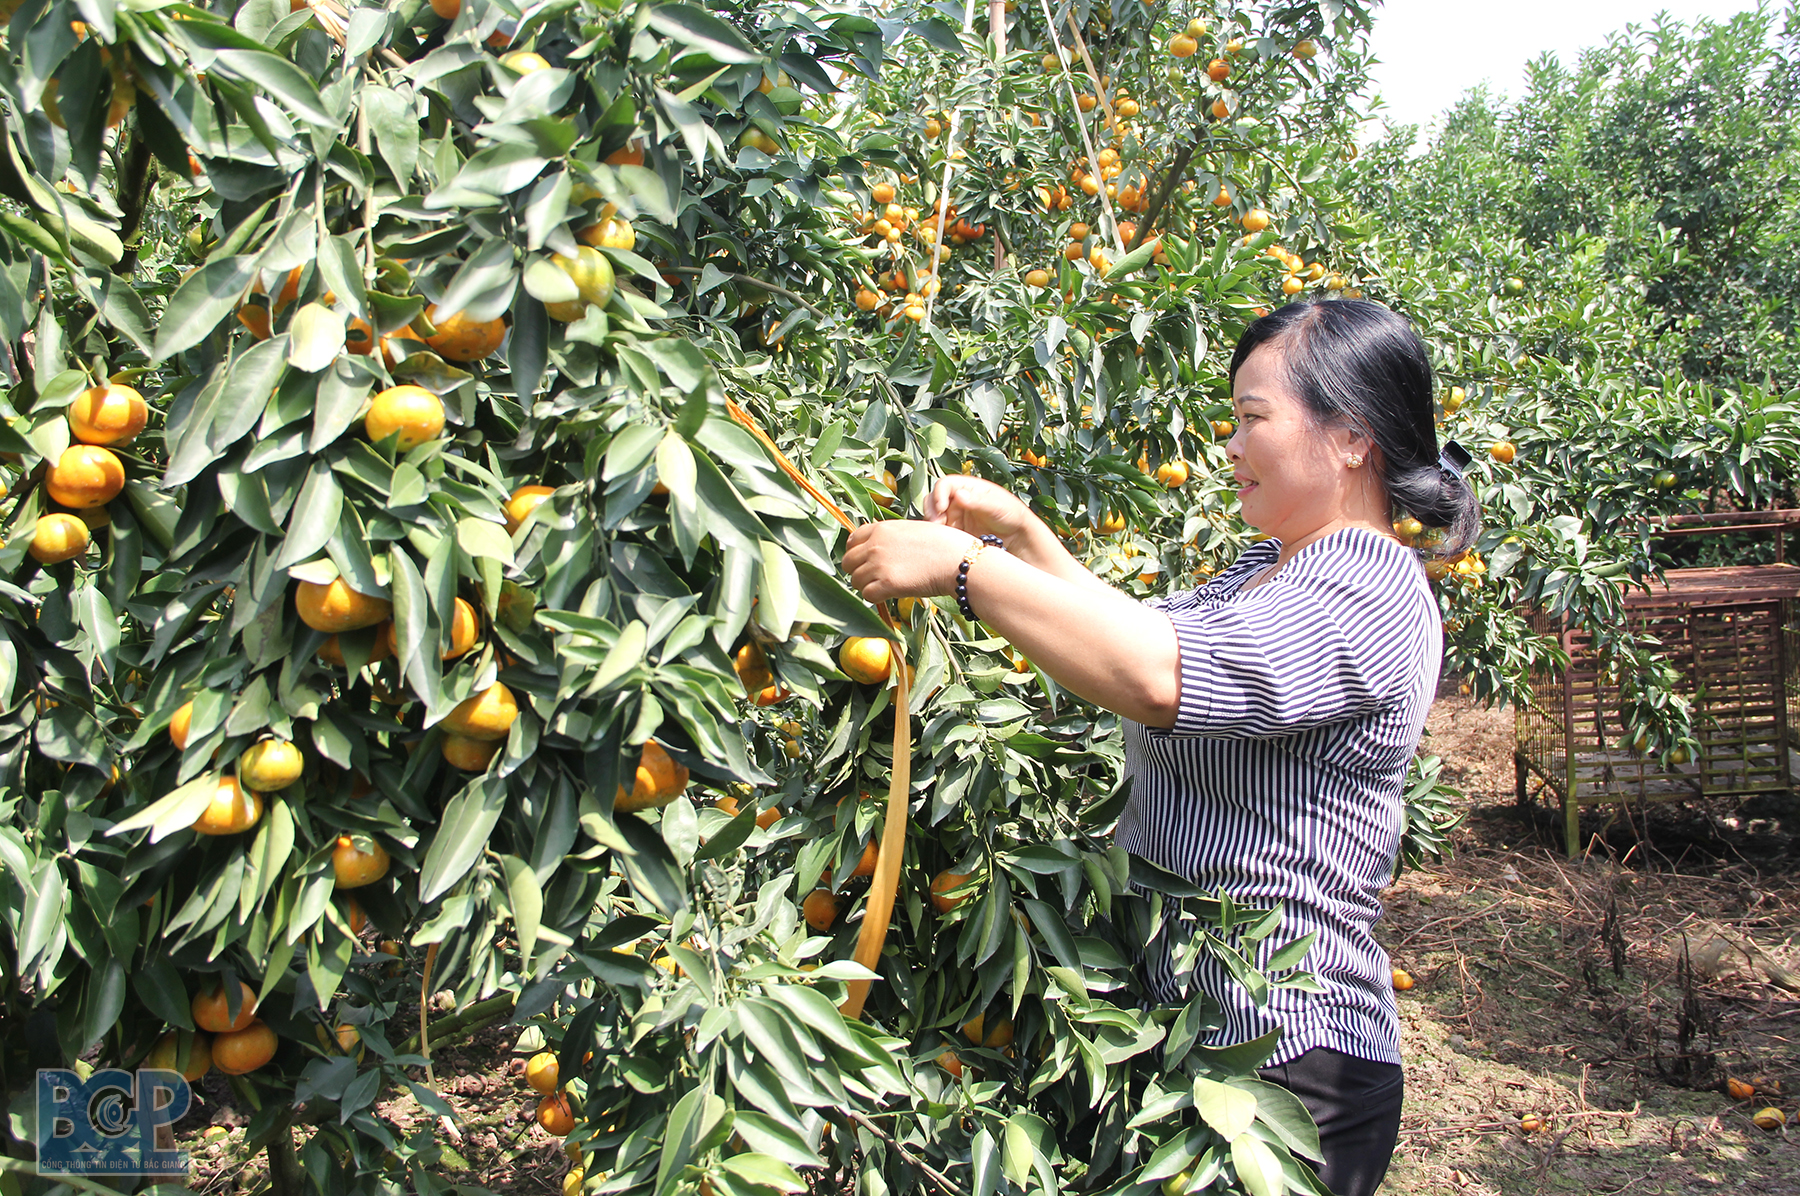 Hội Nông dân tỉnh Bắc Giang tích cực hướng dẫn thành lập các tổ hợp tác, hợp tác xã